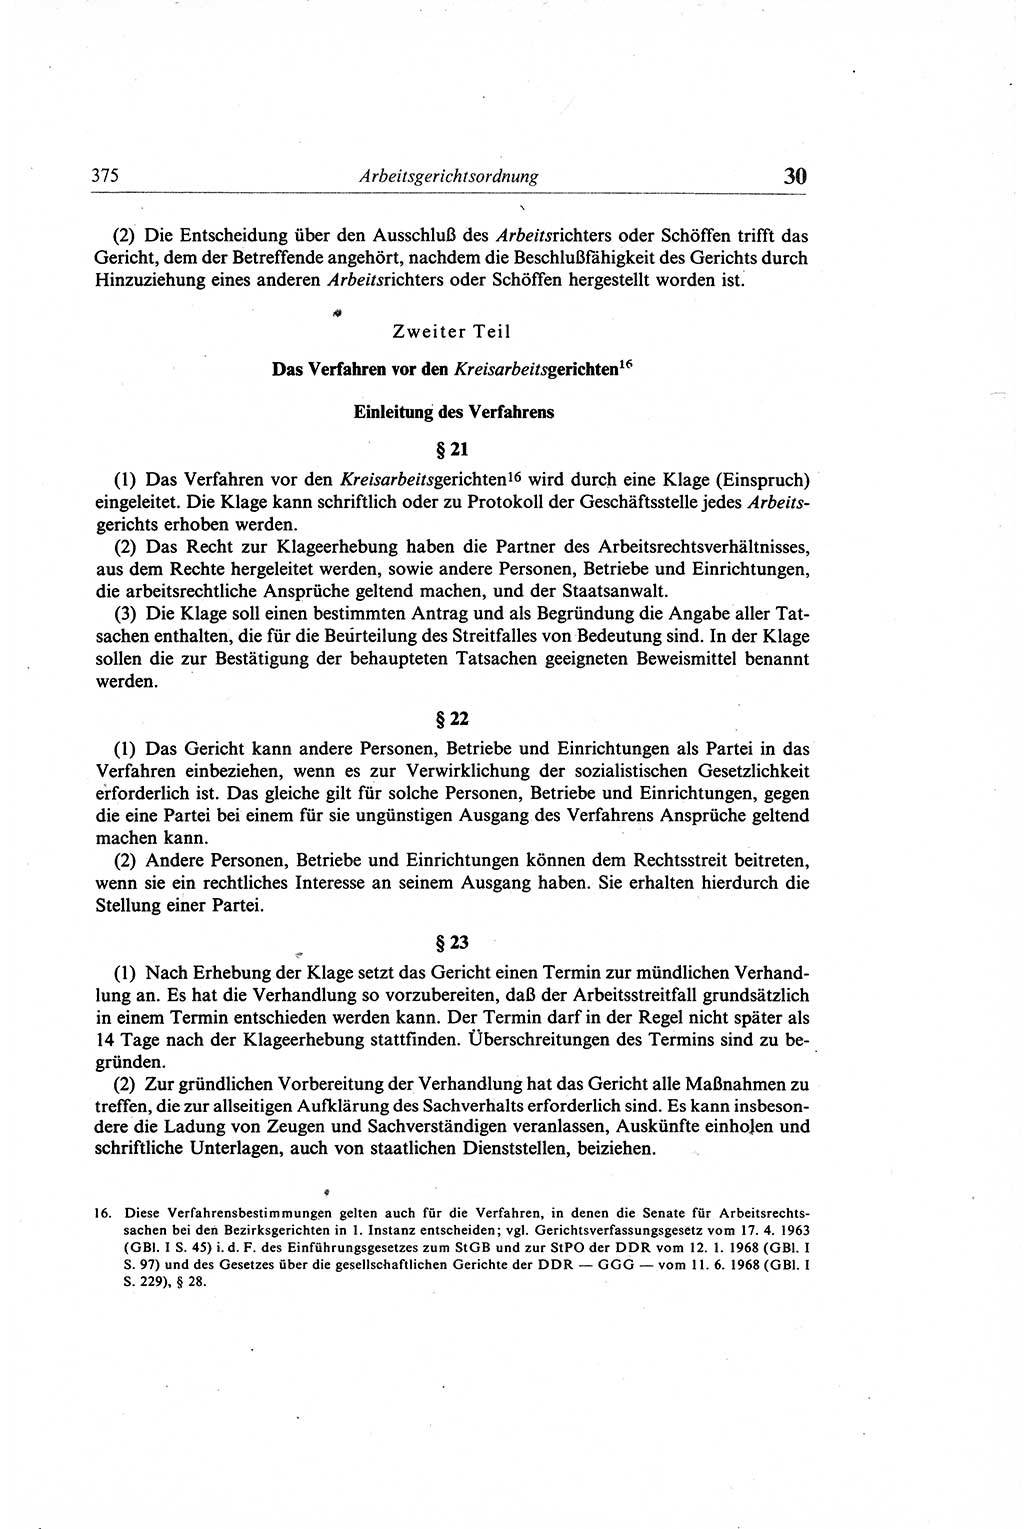 Gesetzbuch der Arbeit (GBA) und andere ausgewählte rechtliche Bestimmungen [Deutsche Demokratische Republik (DDR)] 1968, Seite 375 (GBA DDR 1968, S. 375)